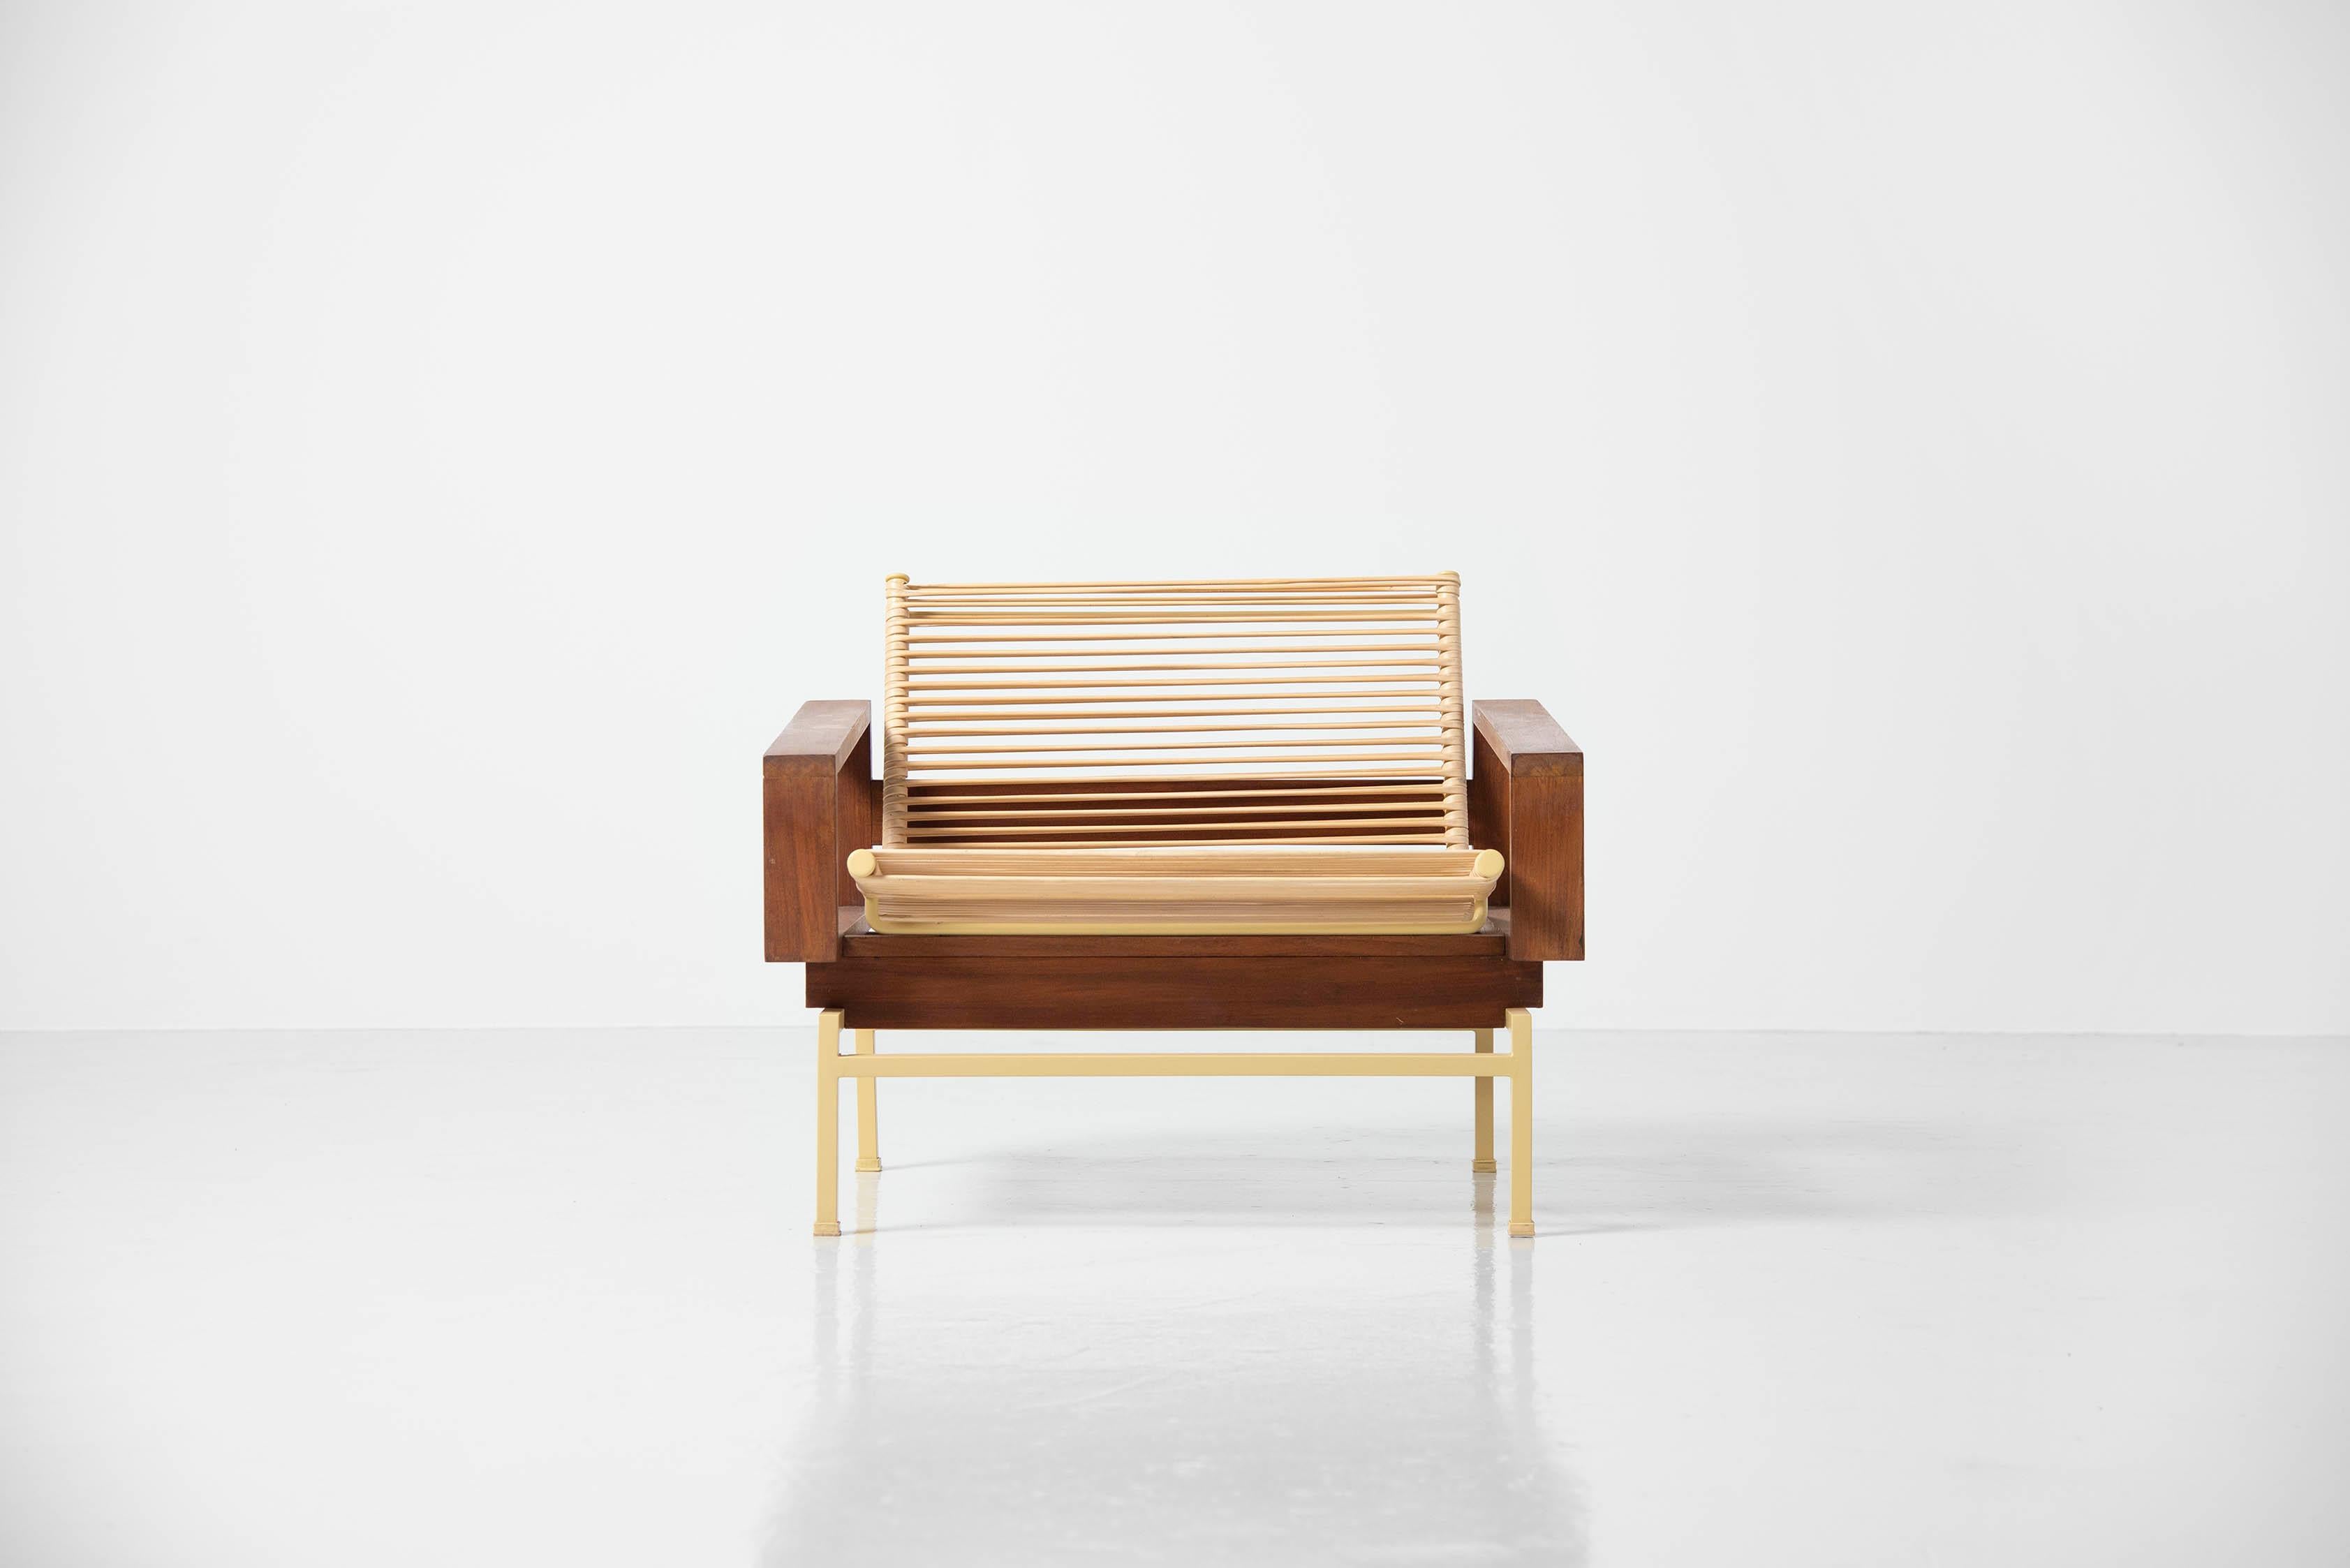 Extrêmement rare et exquise chaise longue modèle 183 'Miami' conçue par Rudolf Wolf et fabriquée par Rohé Noordwolde, Hollande 1960. Cette superbe chaise présente une combinaison étonnante de matériaux qui la rendent très extraordinaire. Je n'ai